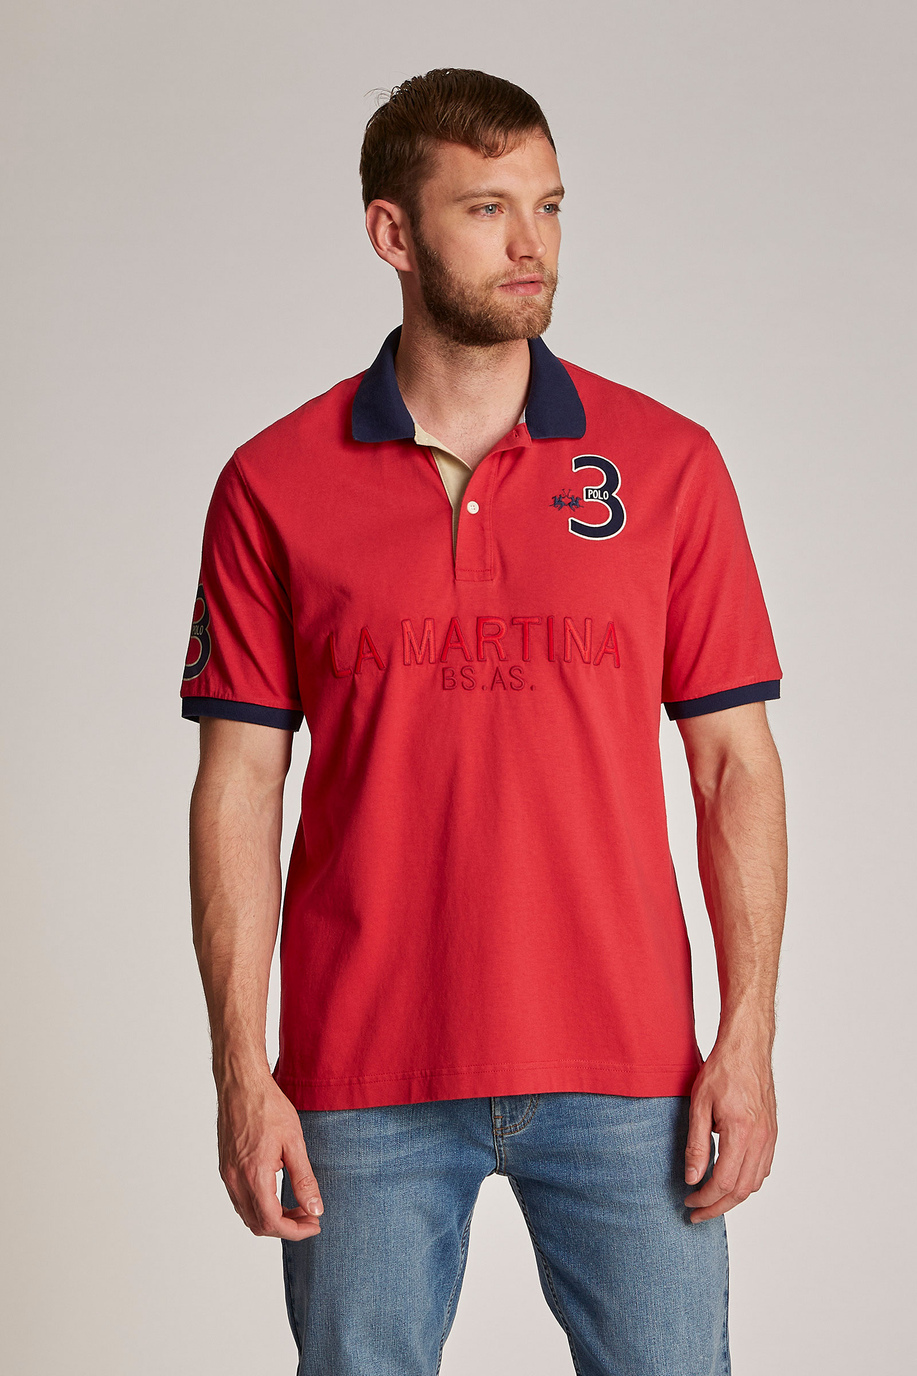 Men's oversized plain-coloured short-sleeved polo shirt